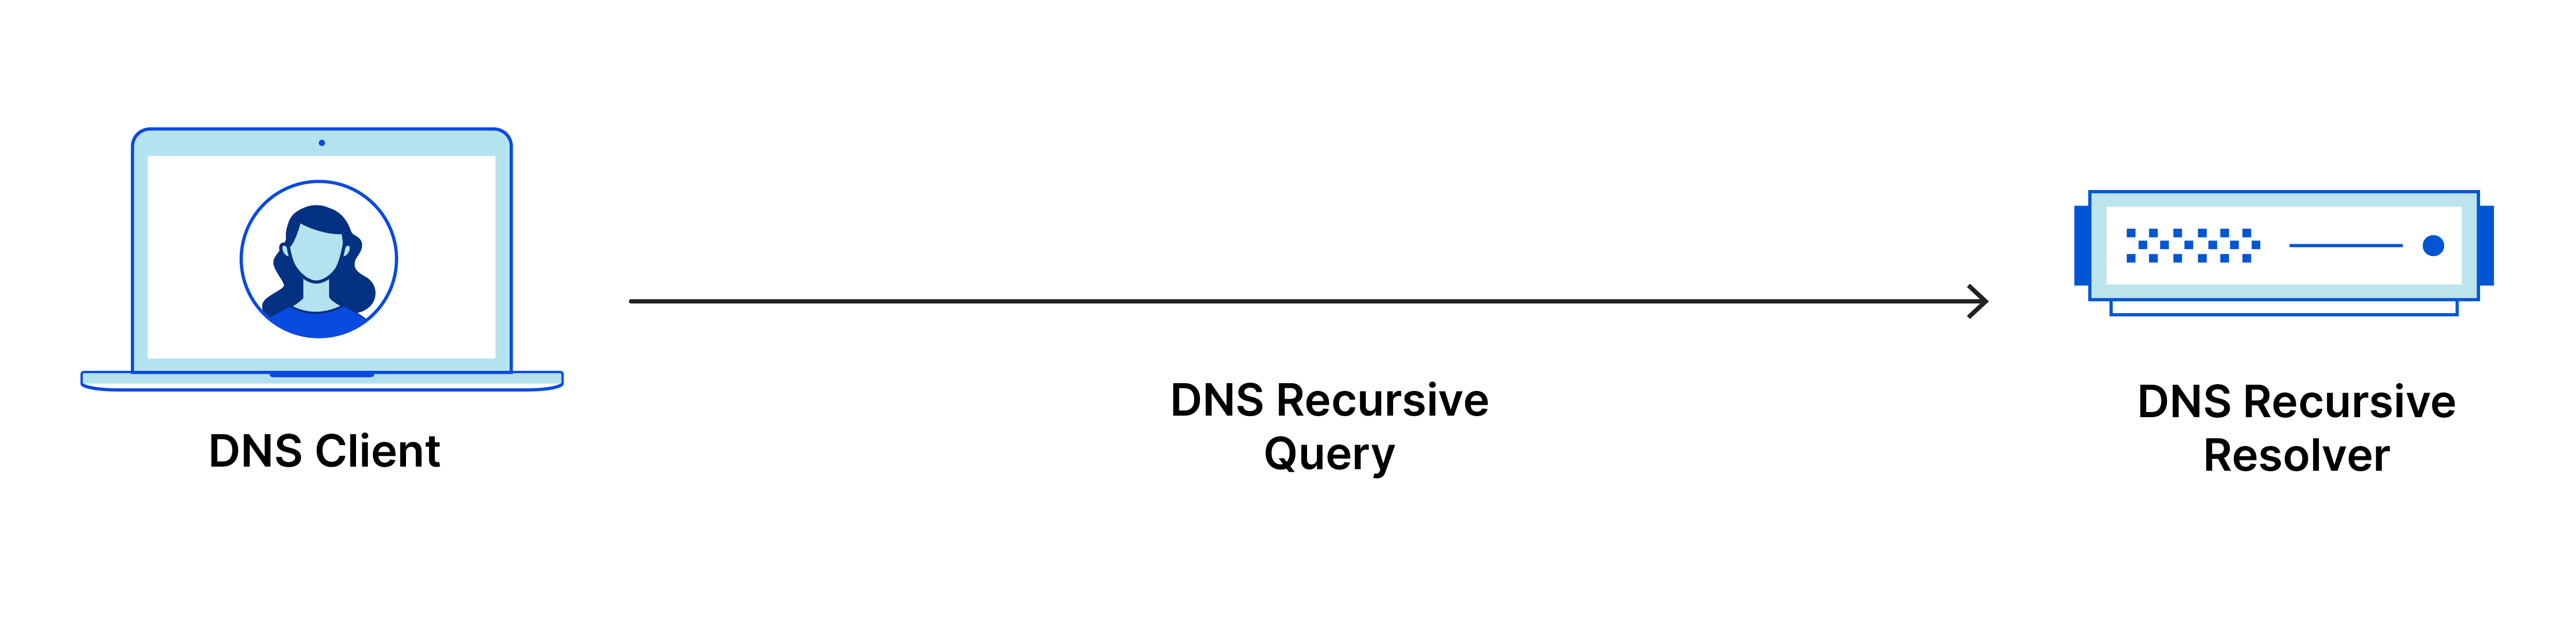 DNS 递归查询从 DNS 客户端到 DNS 递归解析器